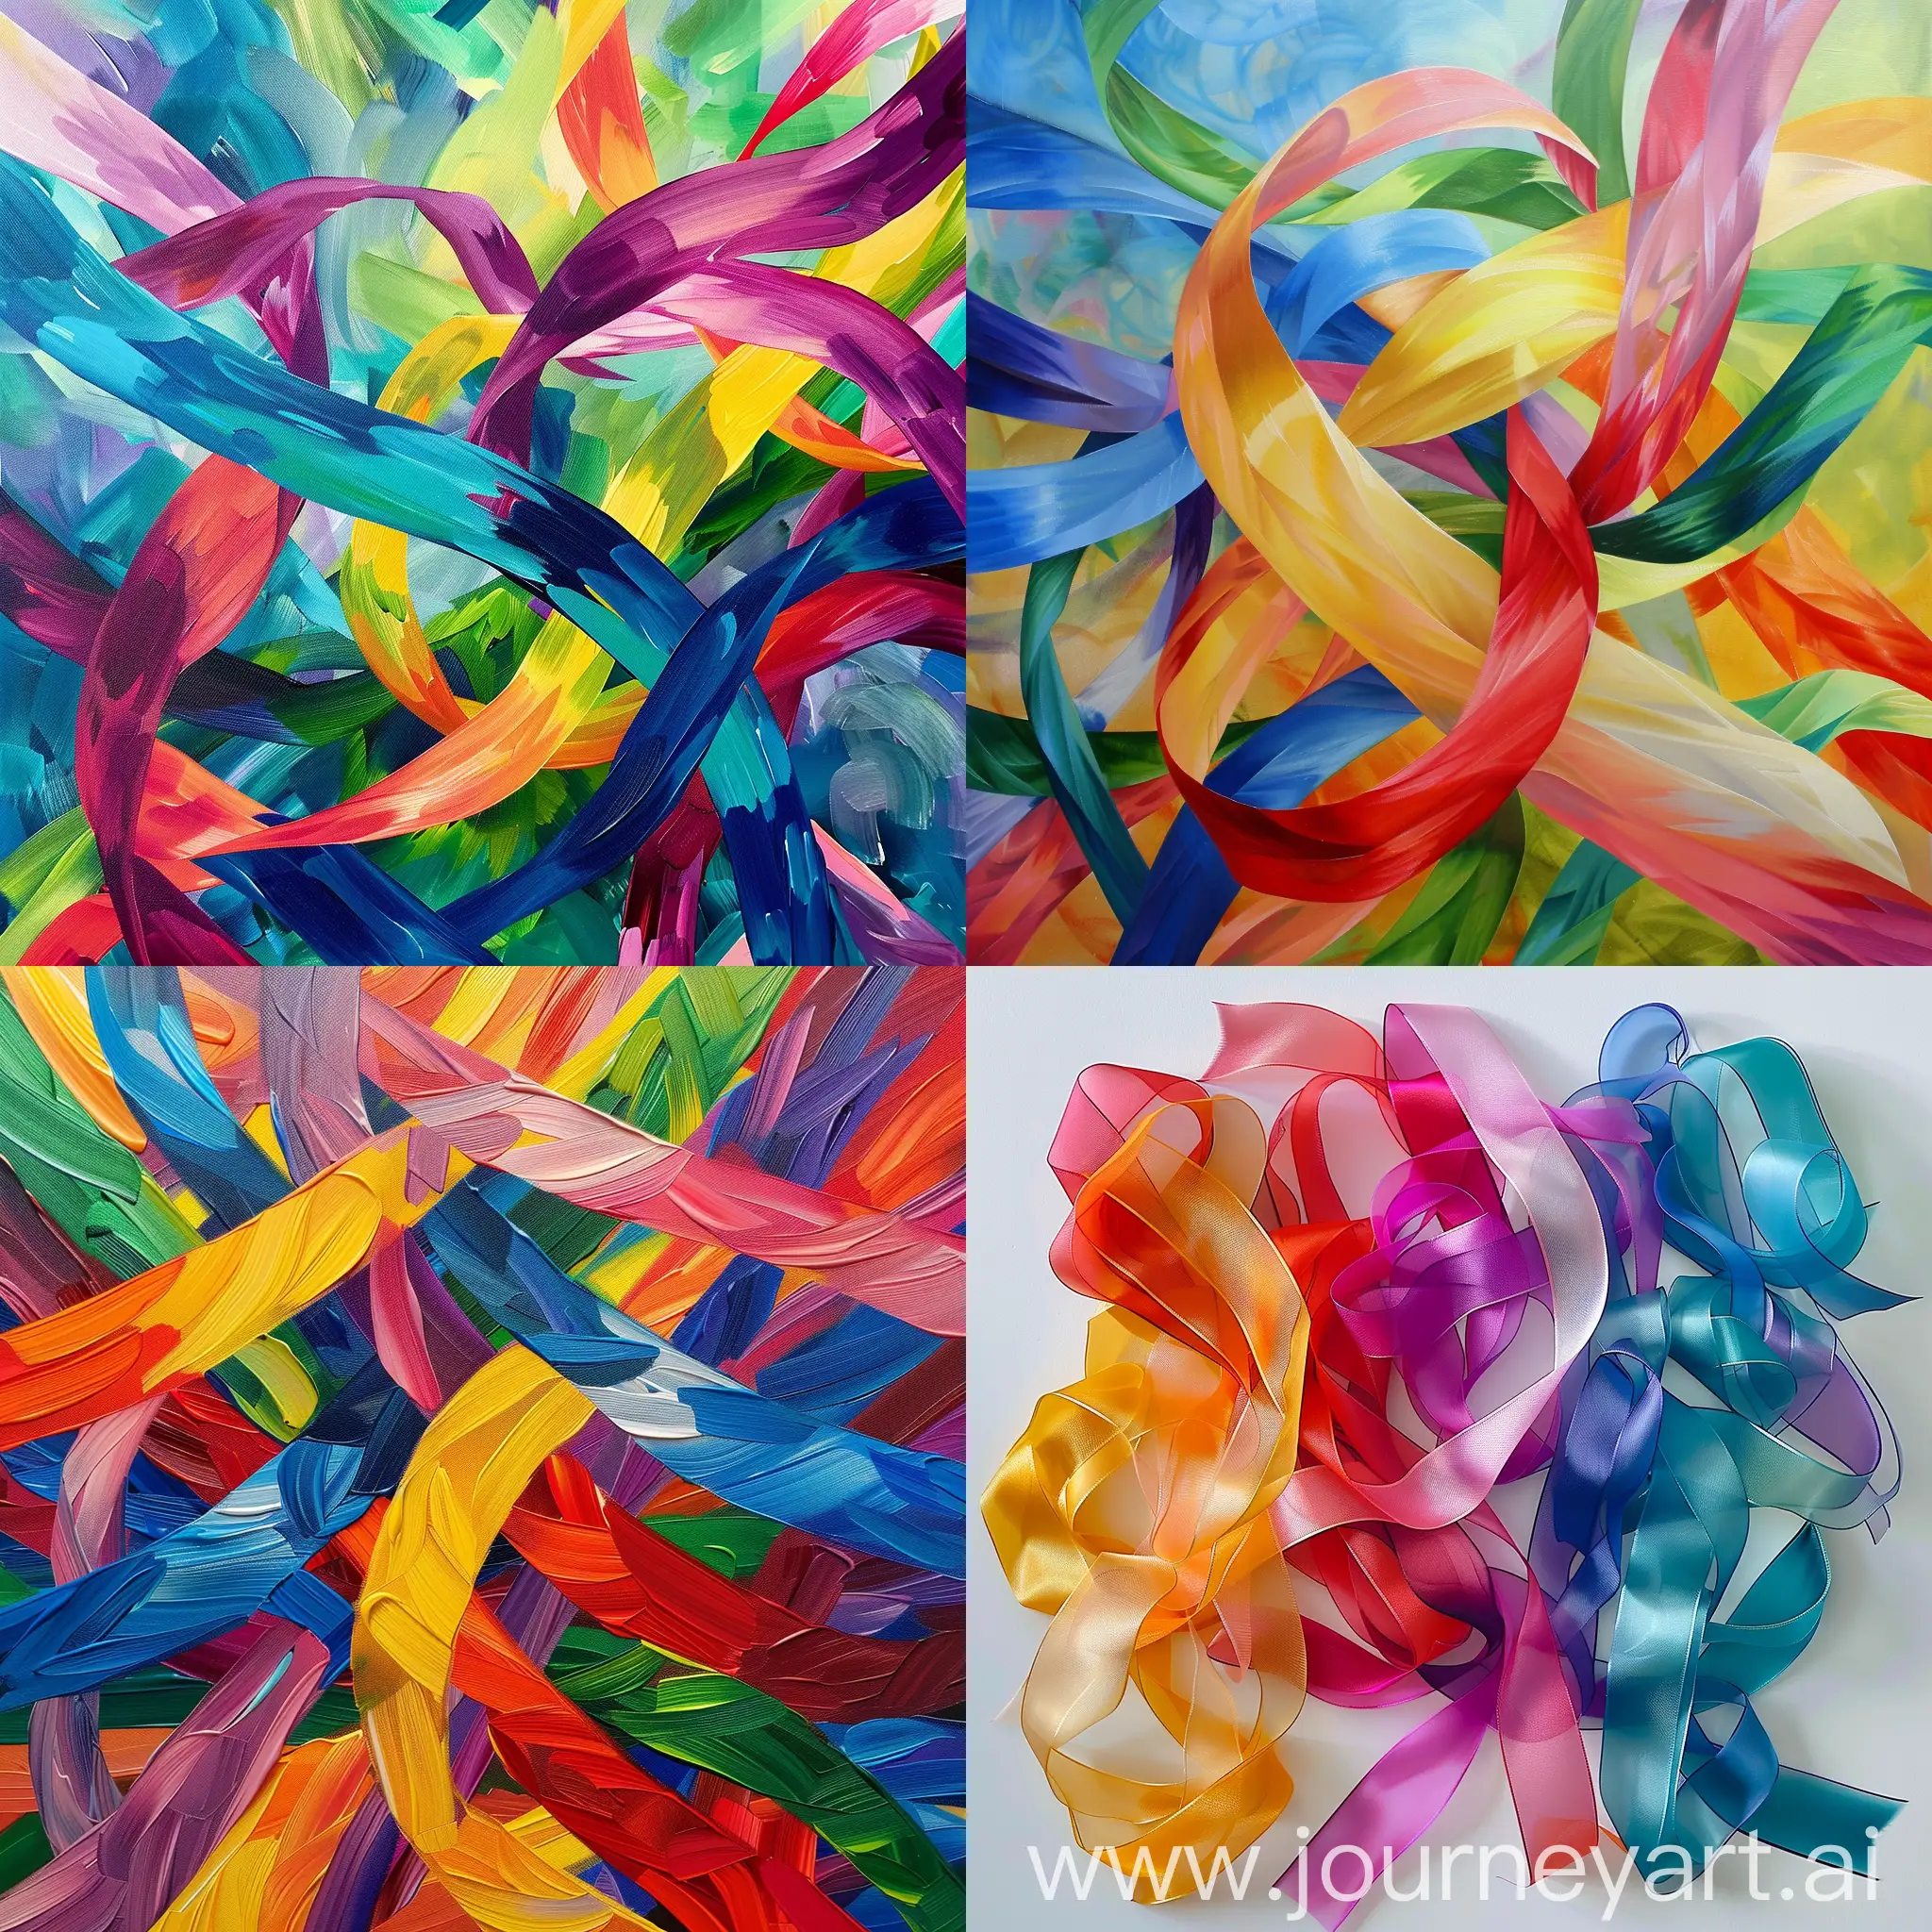 Vibrant-Ribbons-Abstract-Art